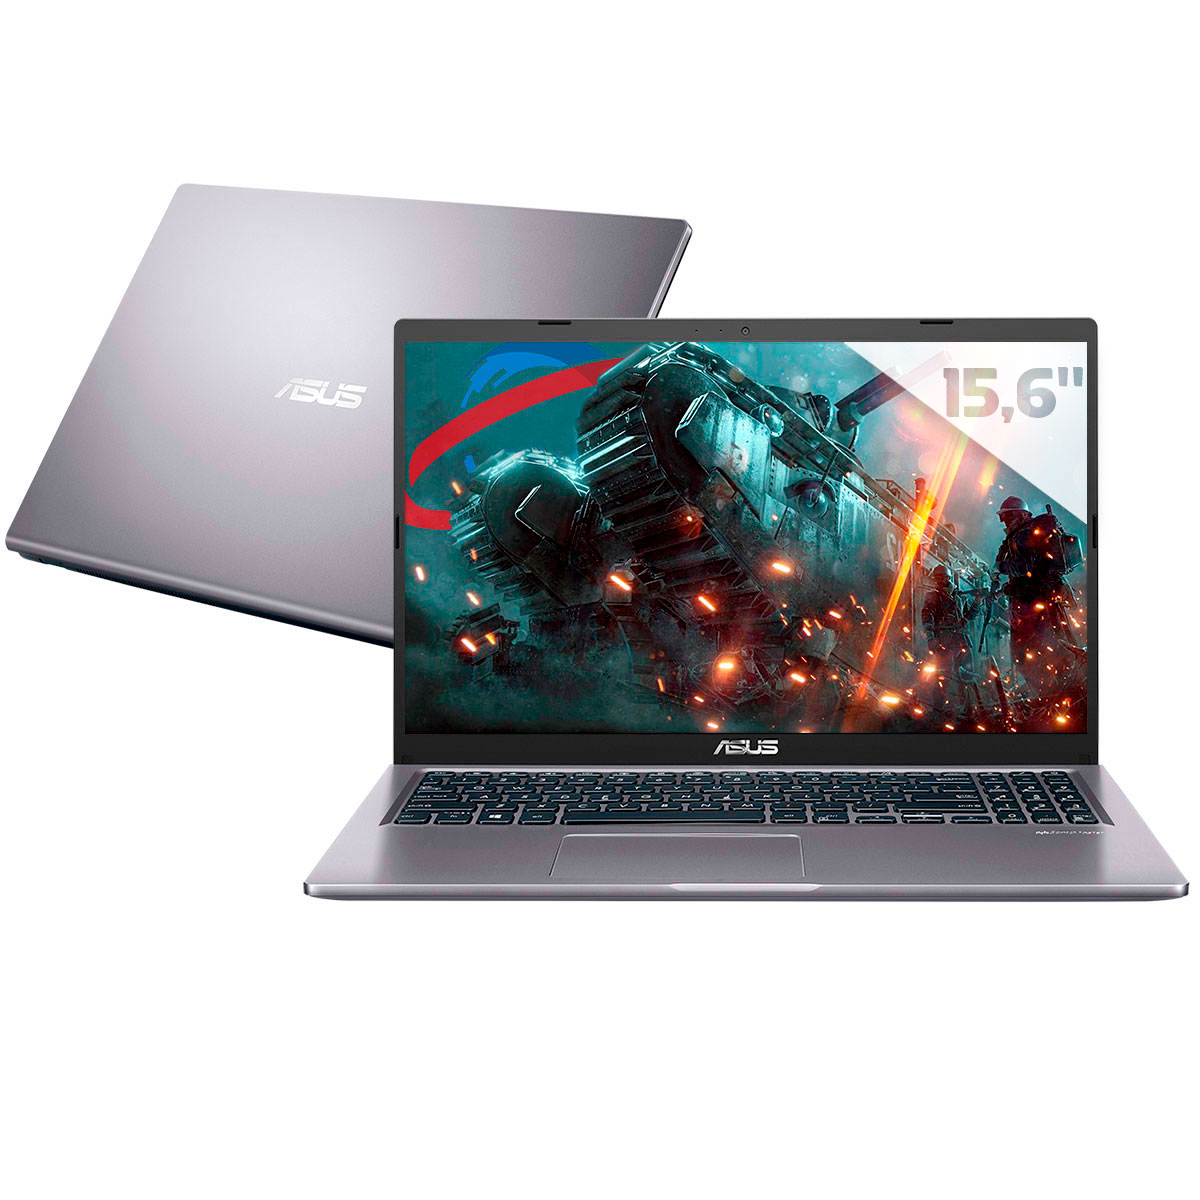 Notebook Asus X515JF-EJ153T - Intel i5 1035G1, RAM 32GB, SSD 256GB, GeForce MX130, Tela 15.6